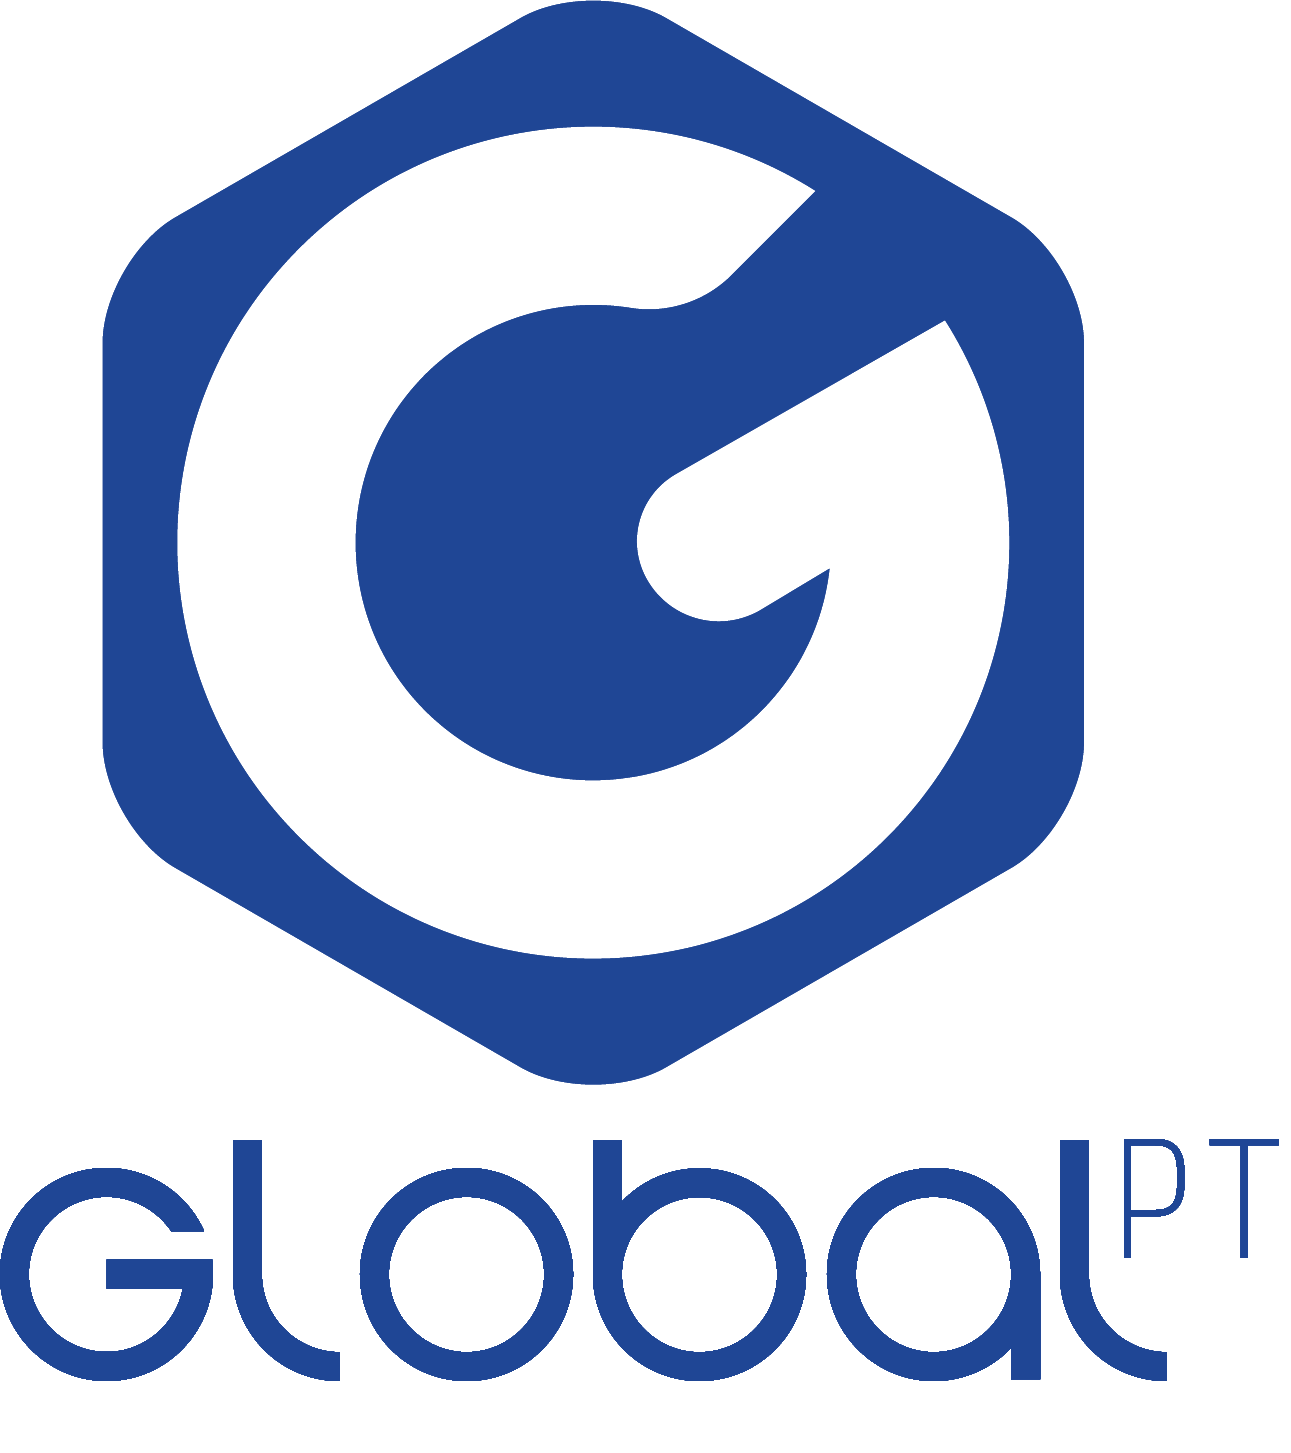 Global PT